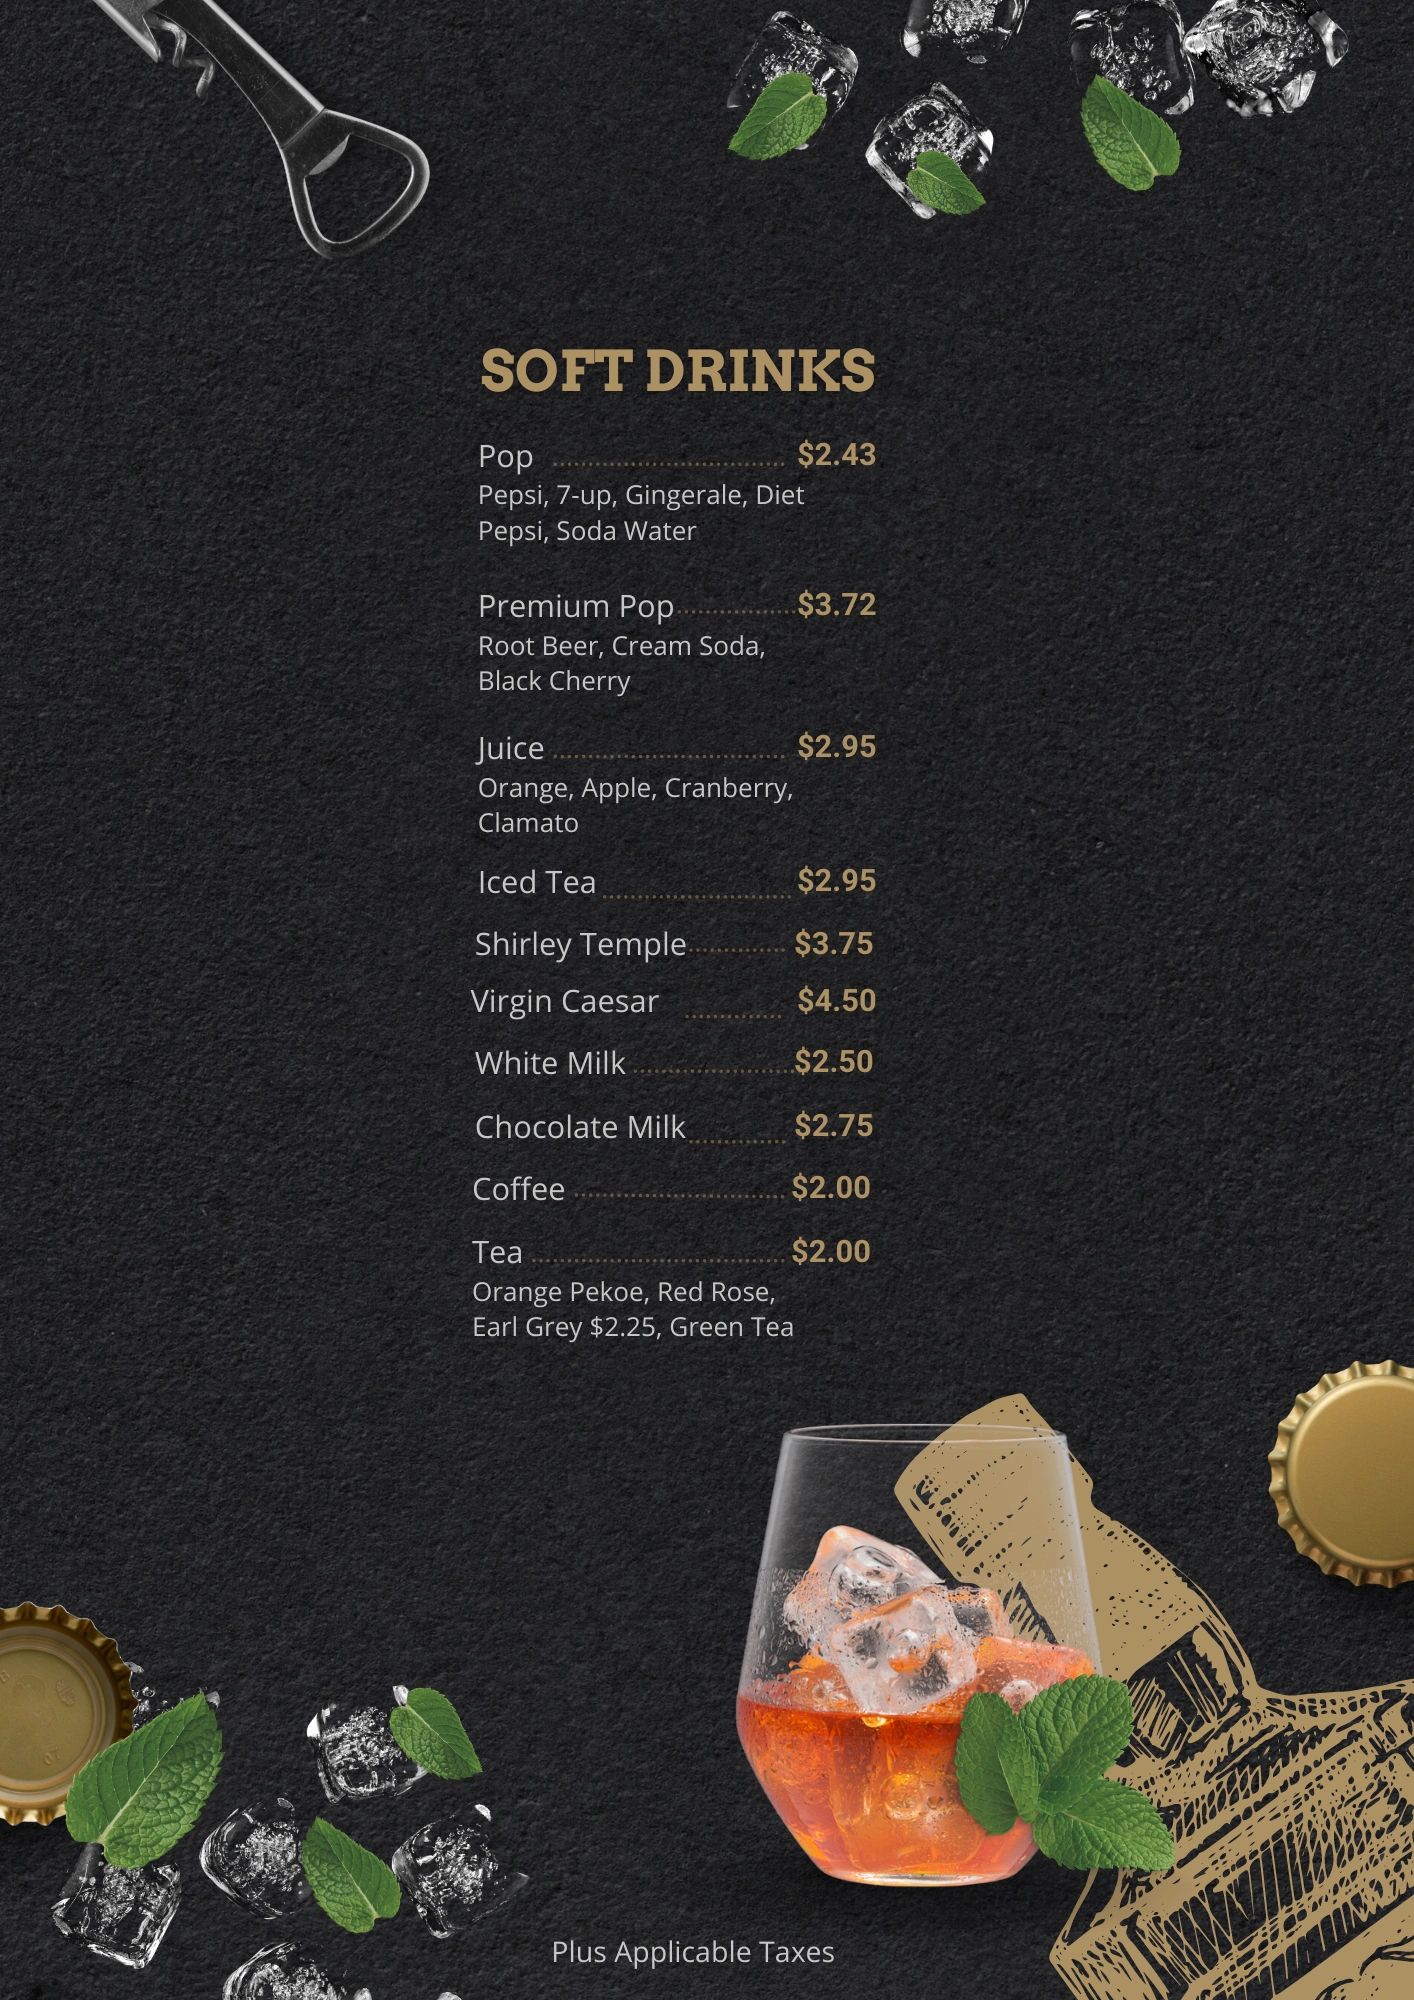 Soft drinks menu